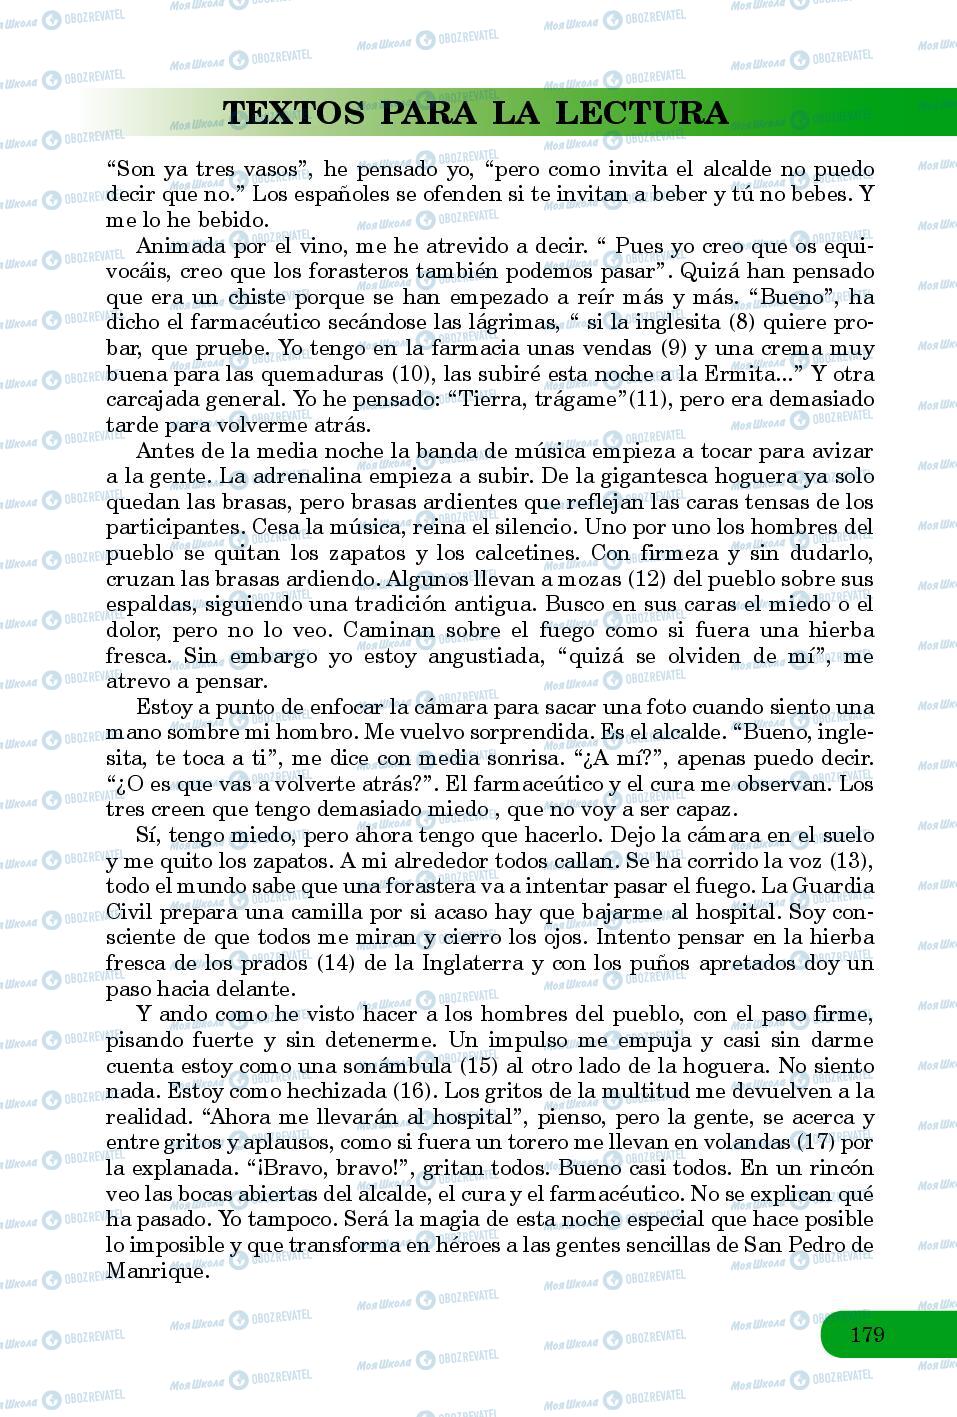 Підручники Іспанська мова 8 клас сторінка 179